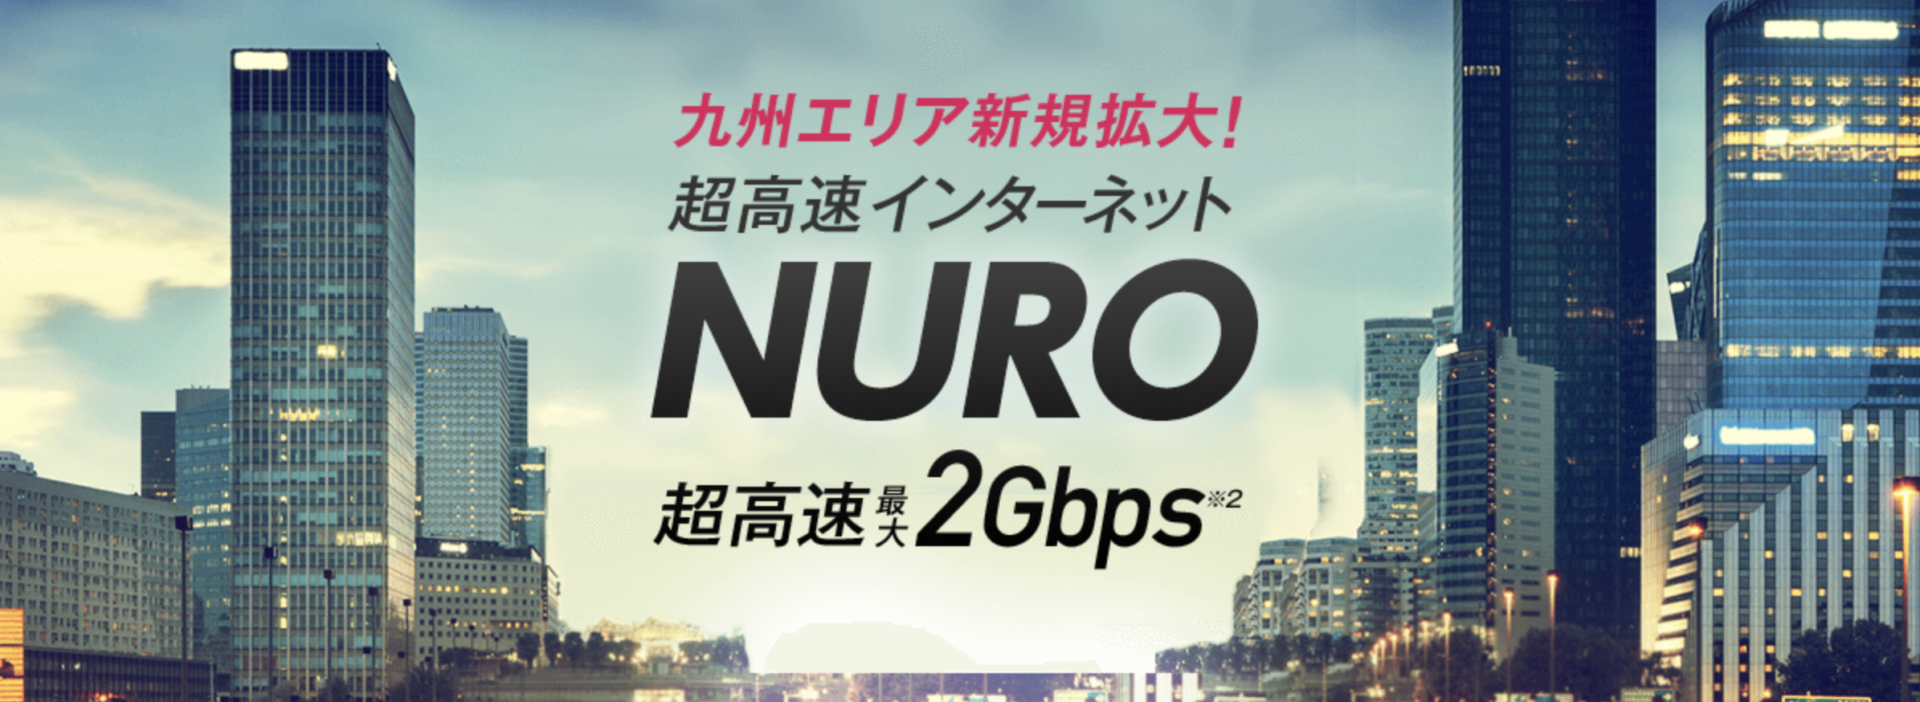 NURO光の画像